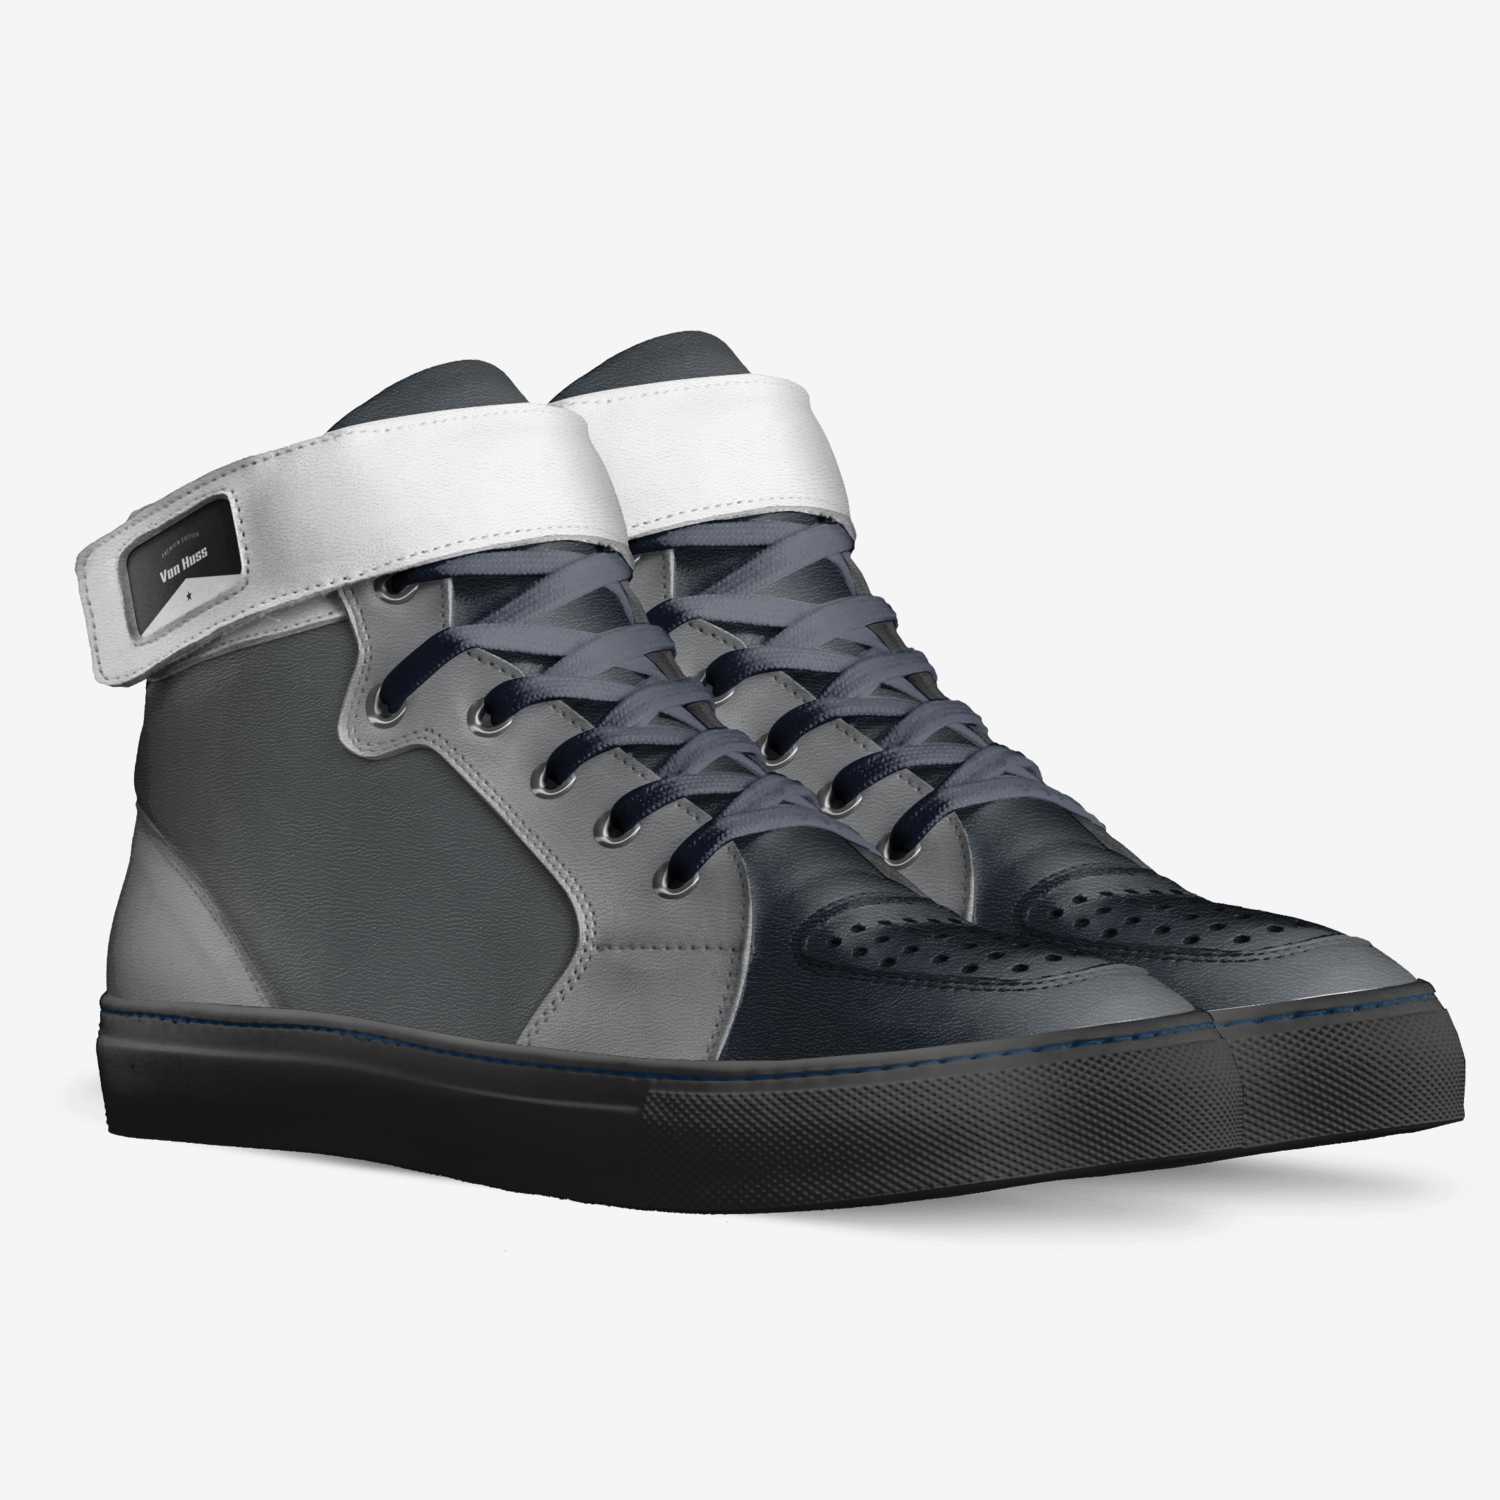 Van Huss | A Custom Shoe concept by Jordan vanhuss